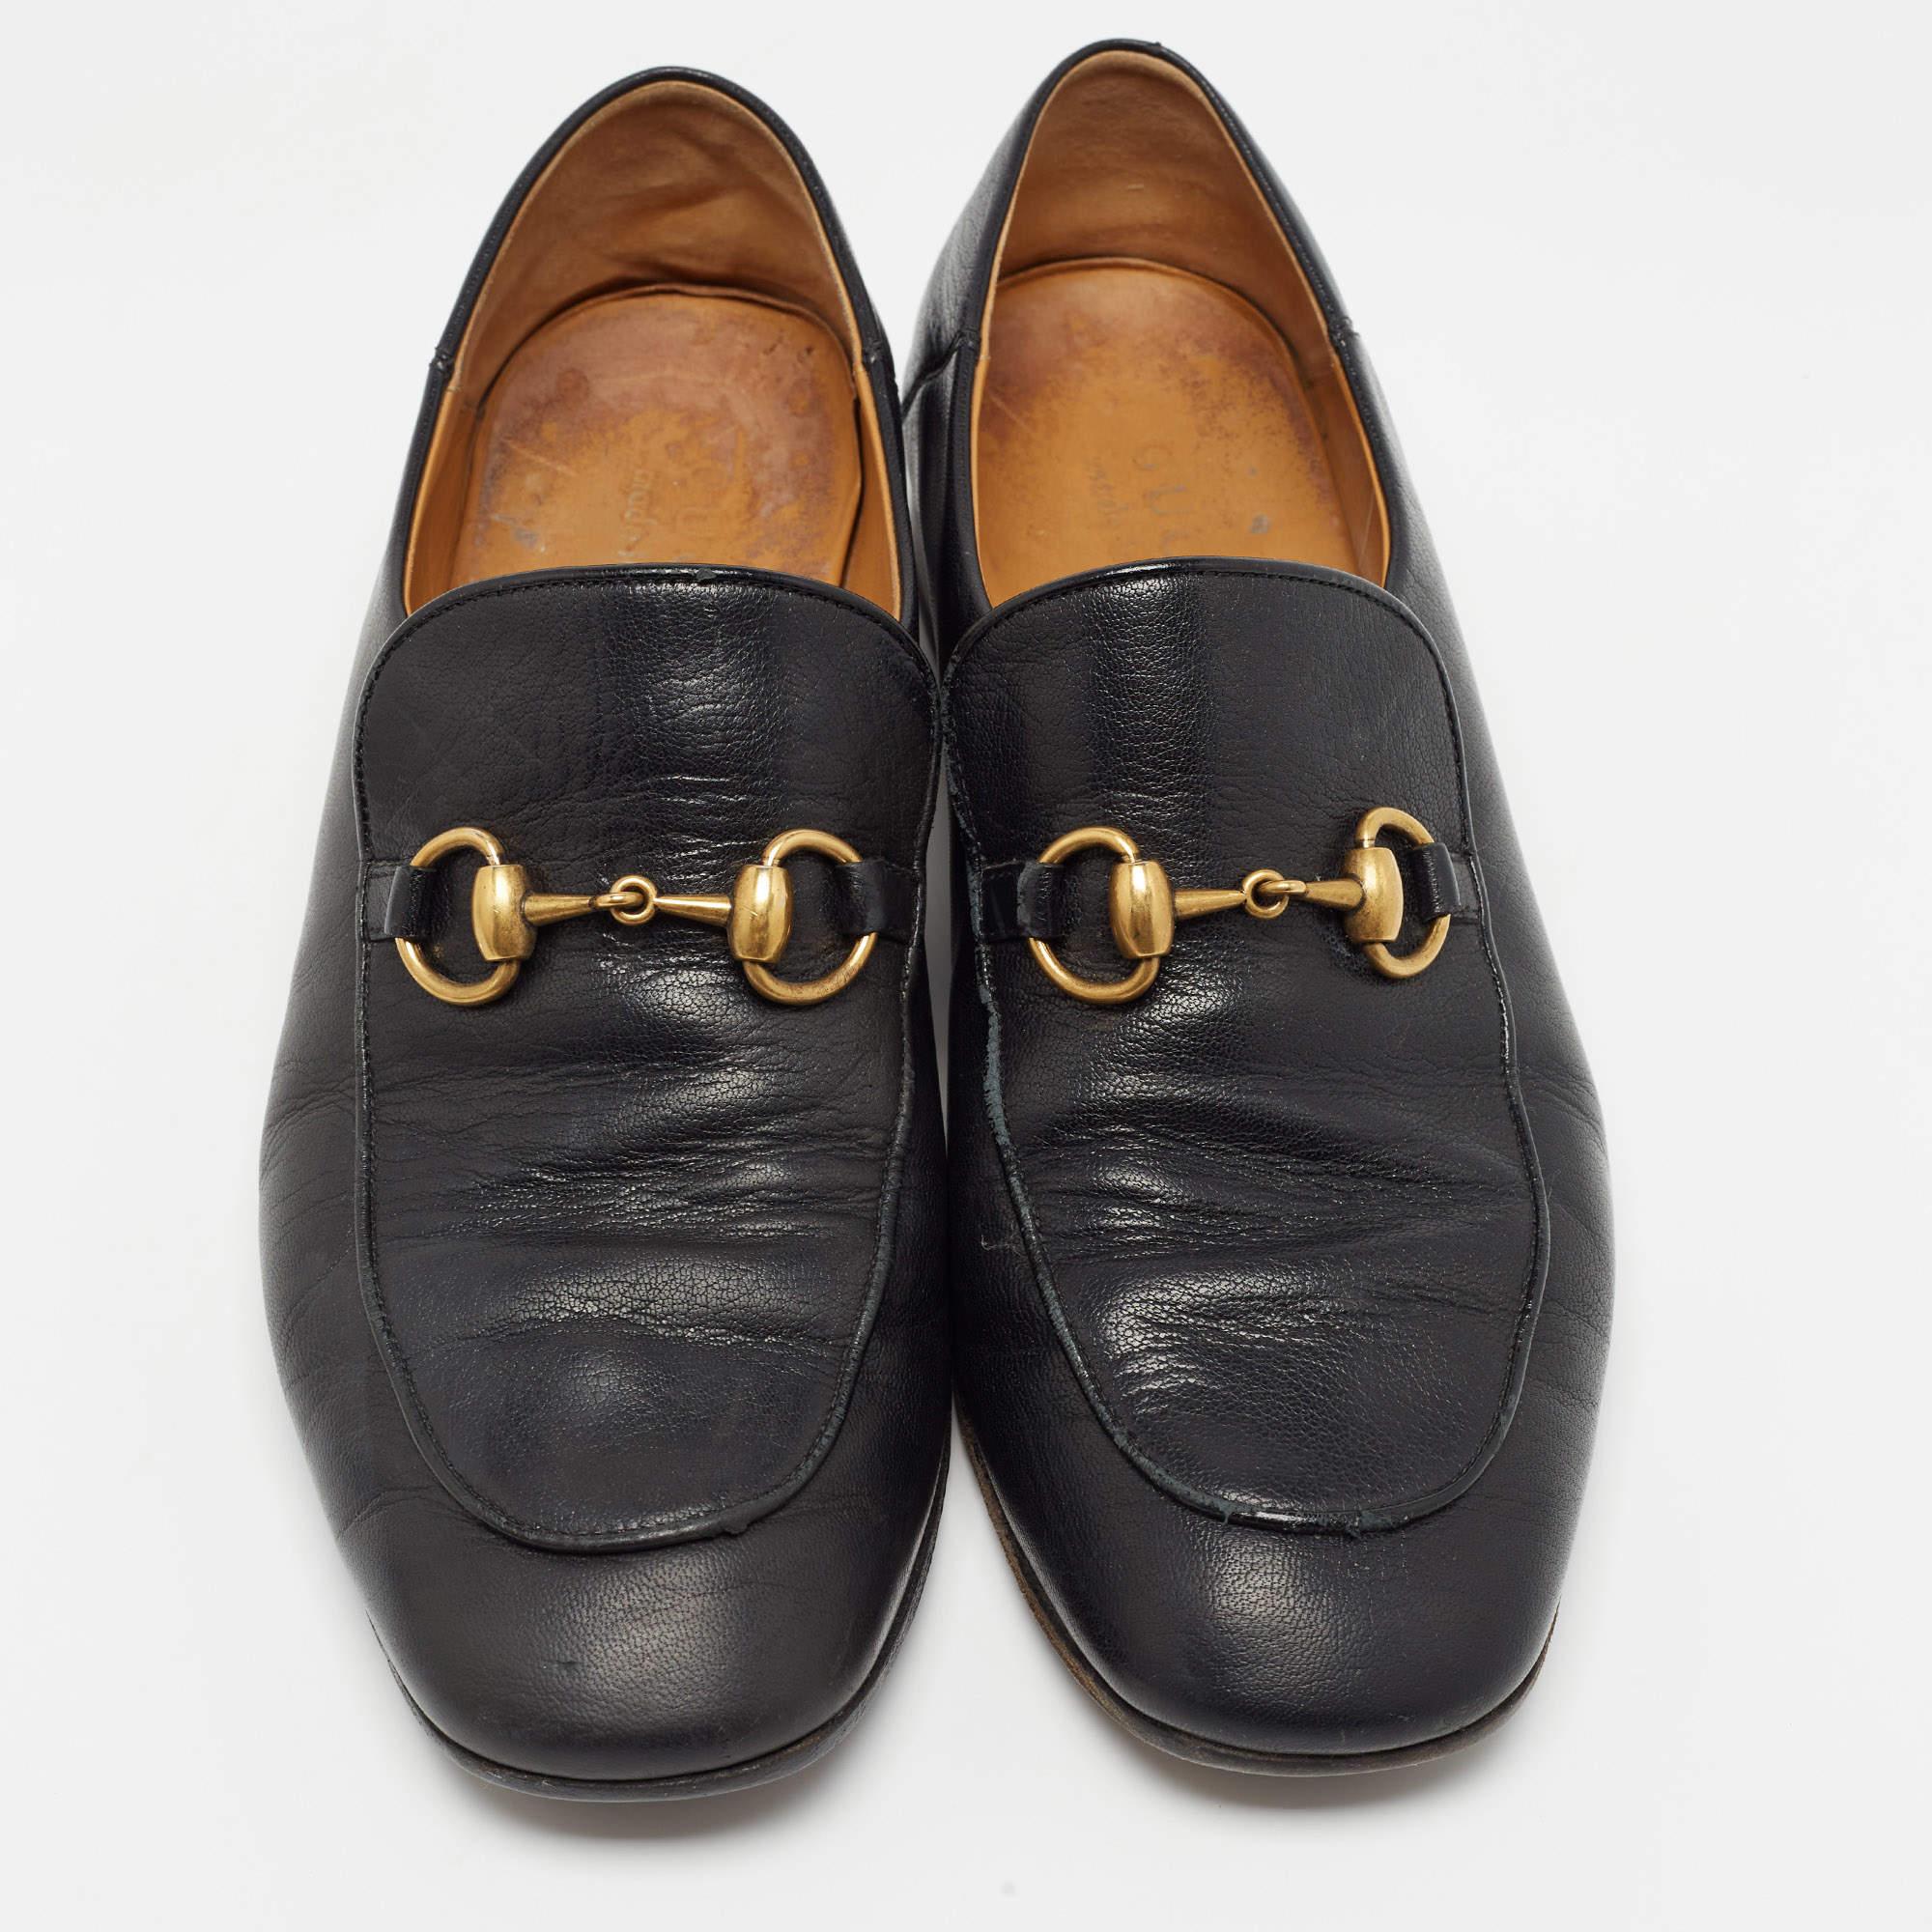 Praktisch, modisch und strapazierfähig - diese Gucci Horsebit 1953 Loafers sind sorgfältig gefertigt, um Ihren täglichen Stil zu begleiten. Sie werden aus den besten MATERIALEN hergestellt und sind ein wertvoller Kauf.

